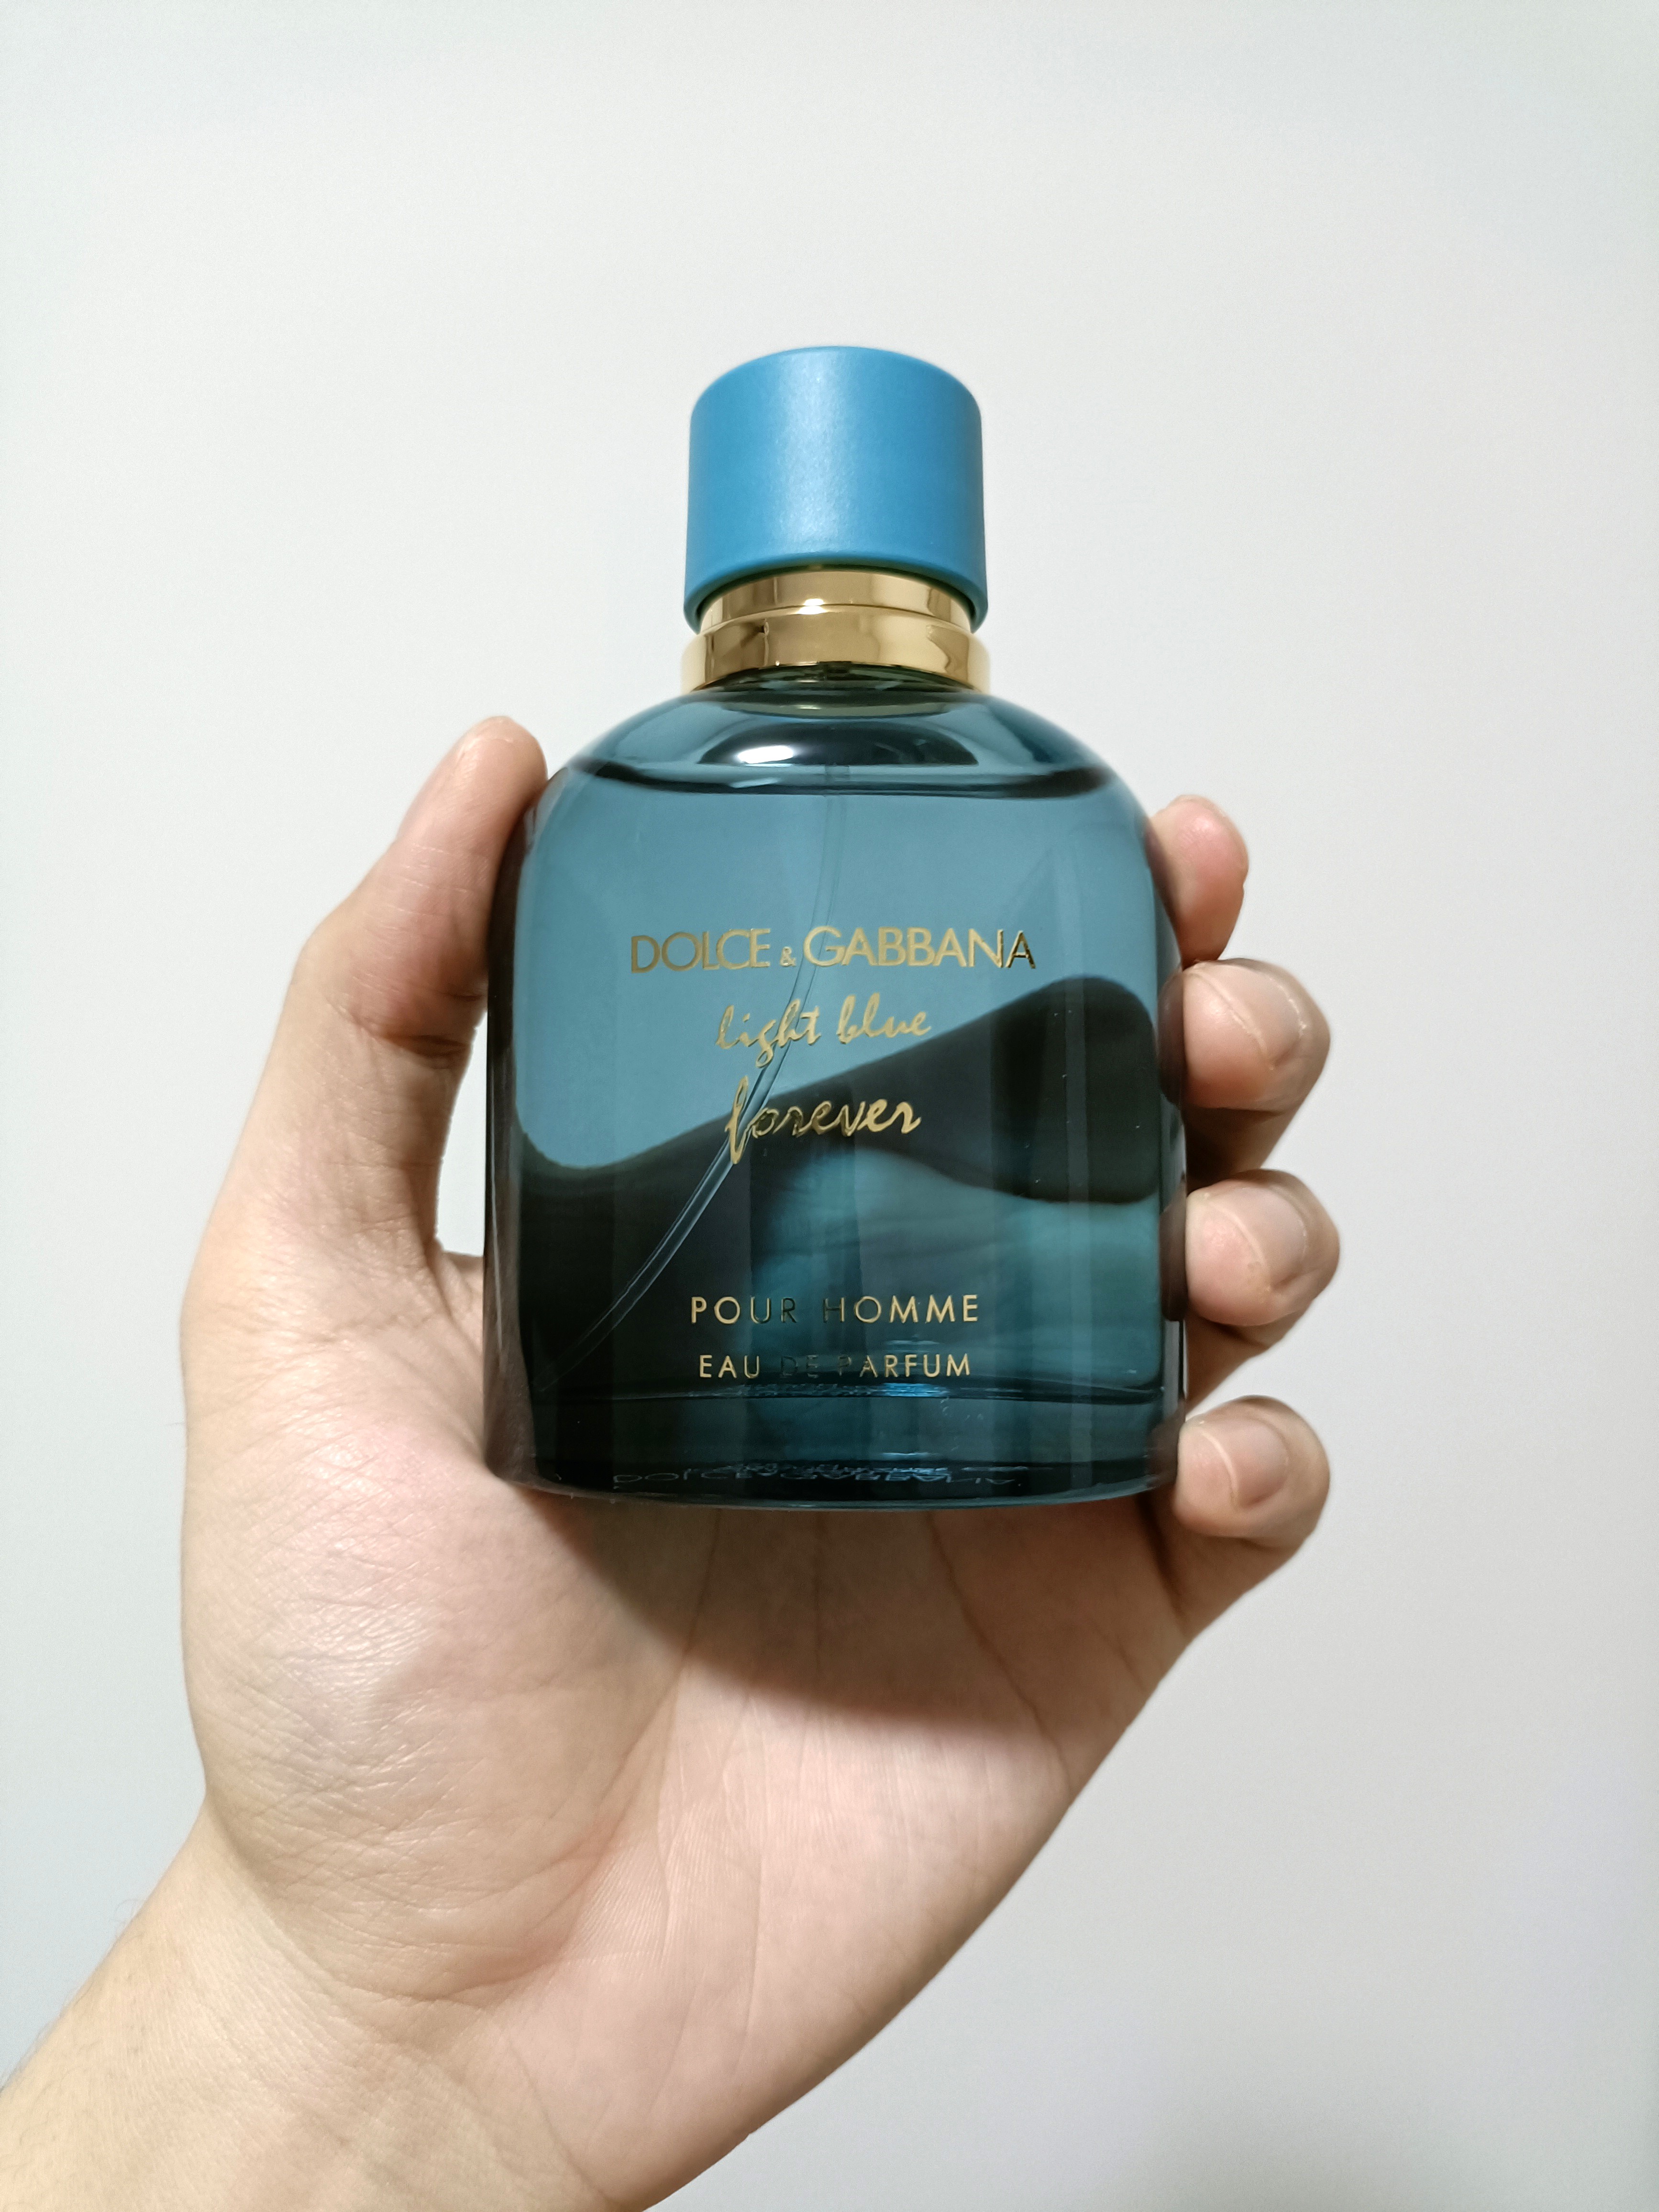 Дольче Габбана Форевер. Pour homme Eternity. Dolce&Gabbana Light Blue Forever pour homme Eau de Parfum, парфюмерная вода, спрей 100 мл. Launo Forever Blue.